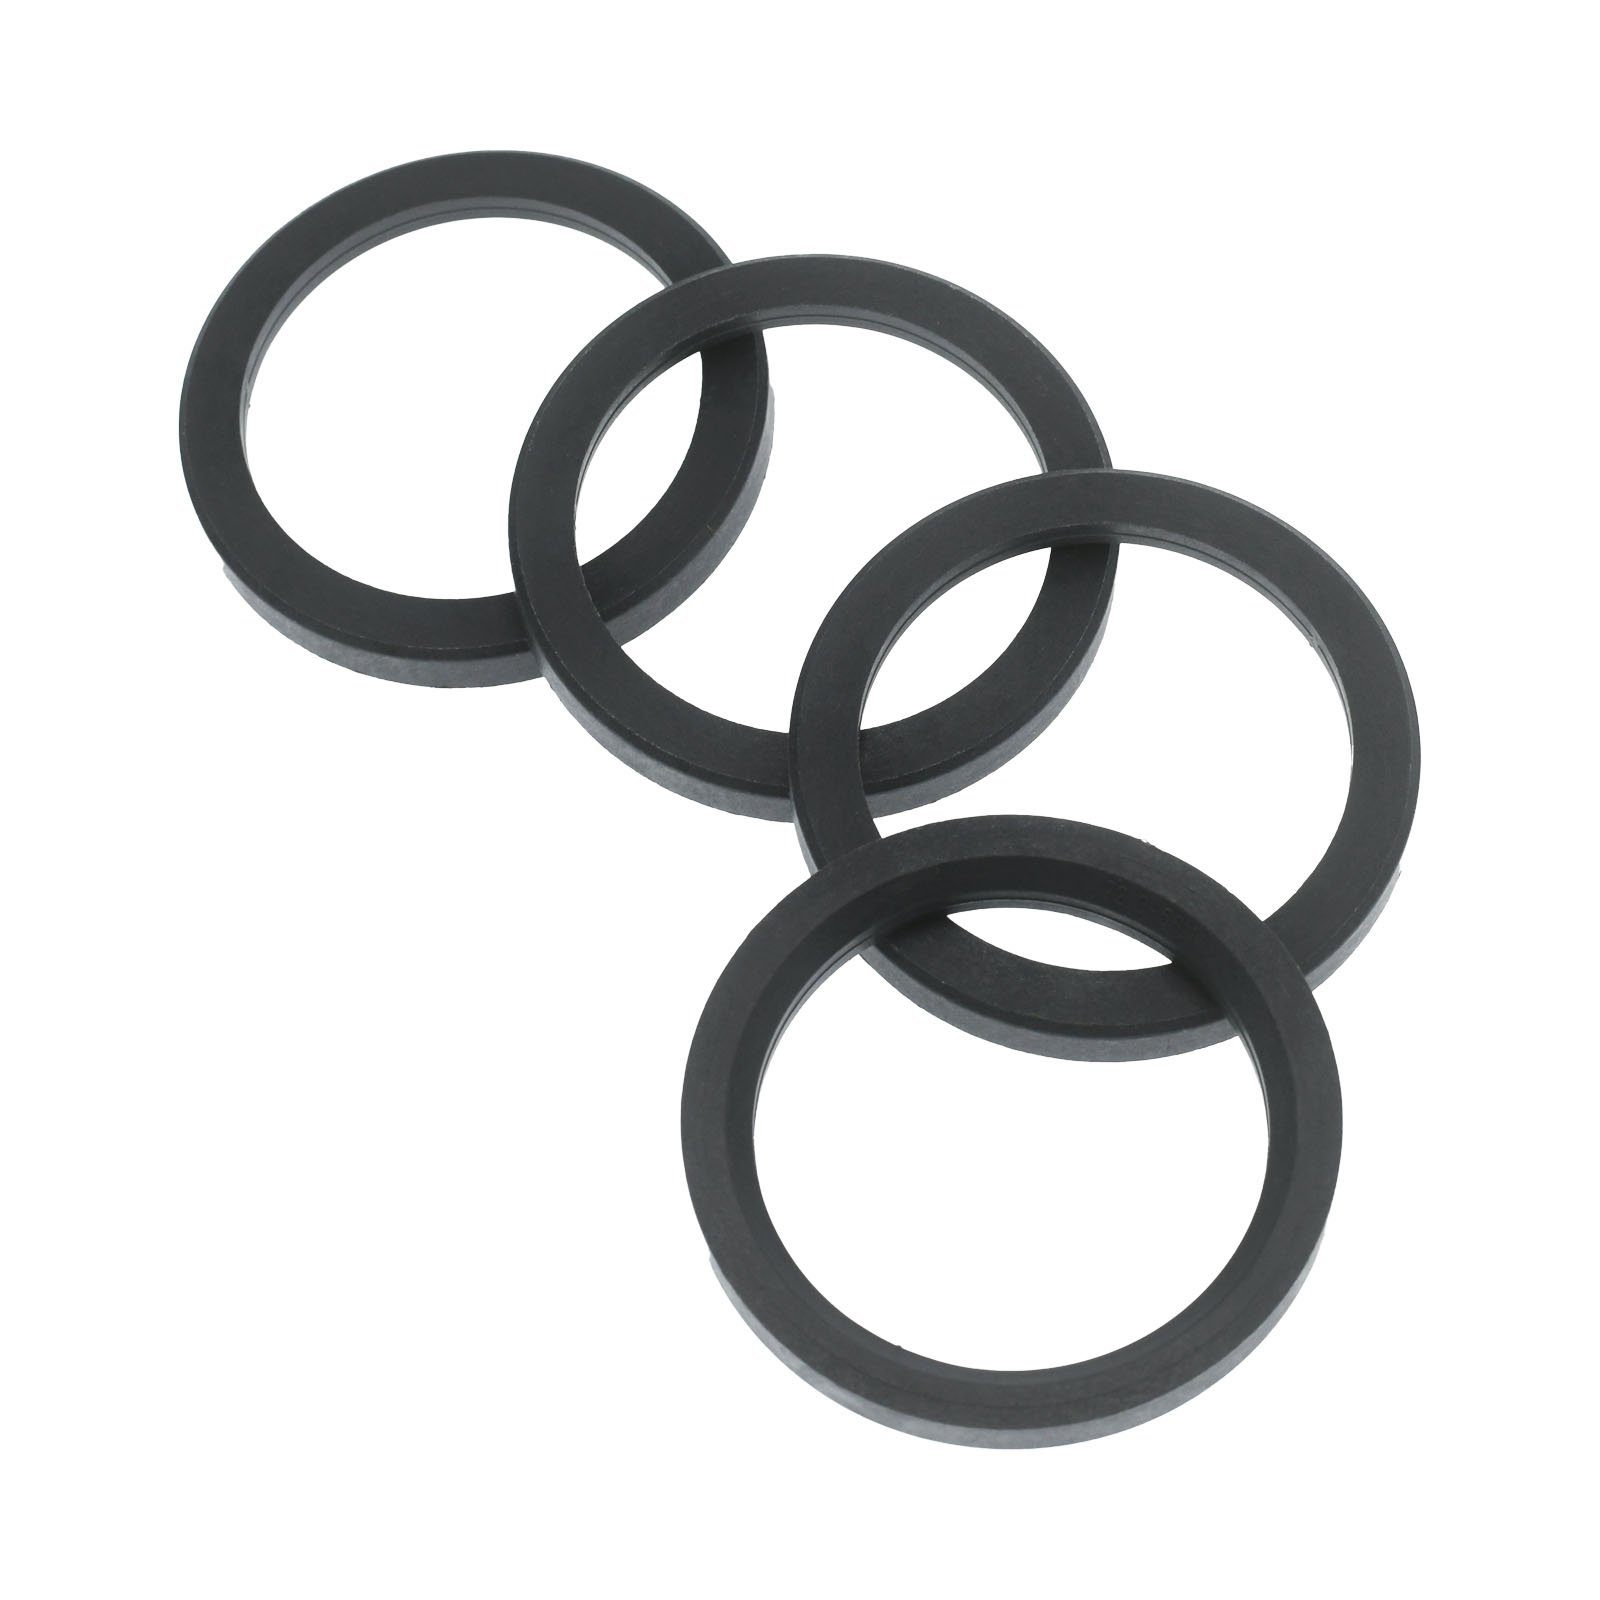 RKC Reifenstift 4x Zentrierringe Dunkelgrau Felgen Ringe Made in Germany, Maße: 72,0 x 56,1 mm